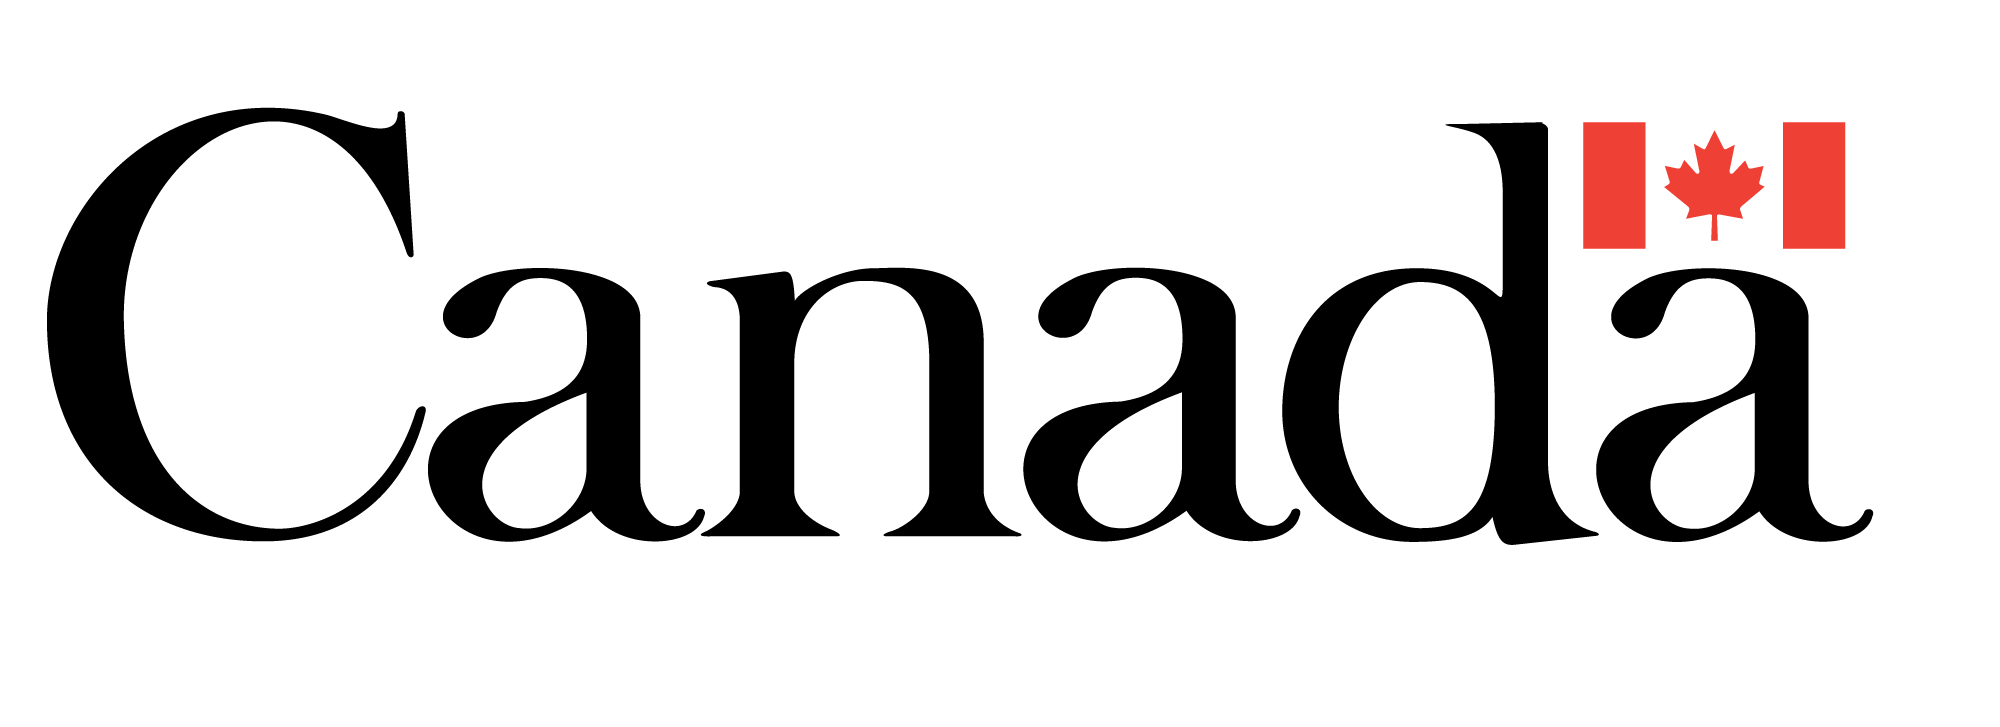 Canada-Government-logo